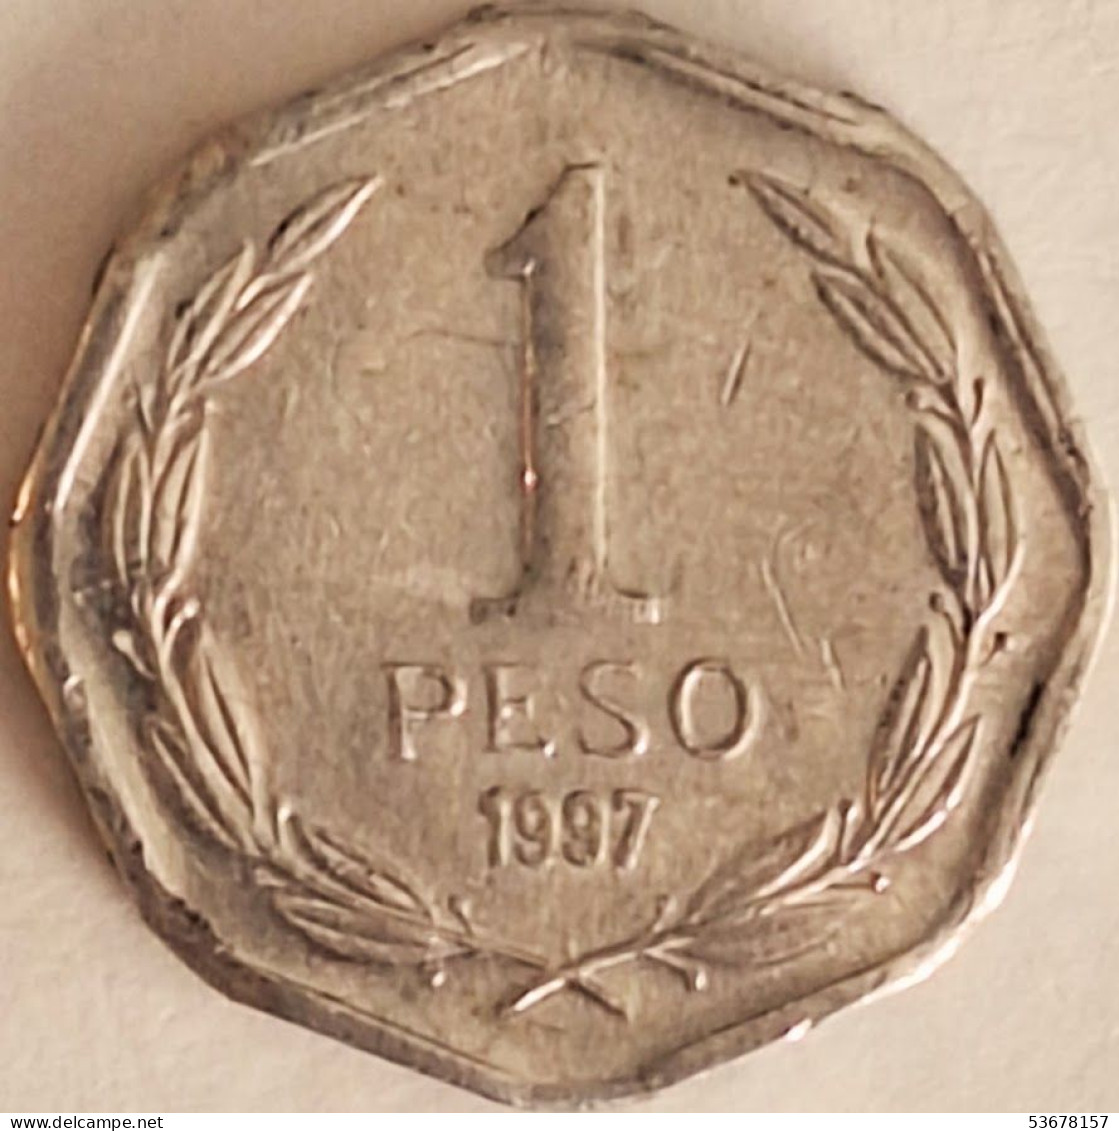 Chile - Peso 1997, KM# 231 (#3433) - Chile